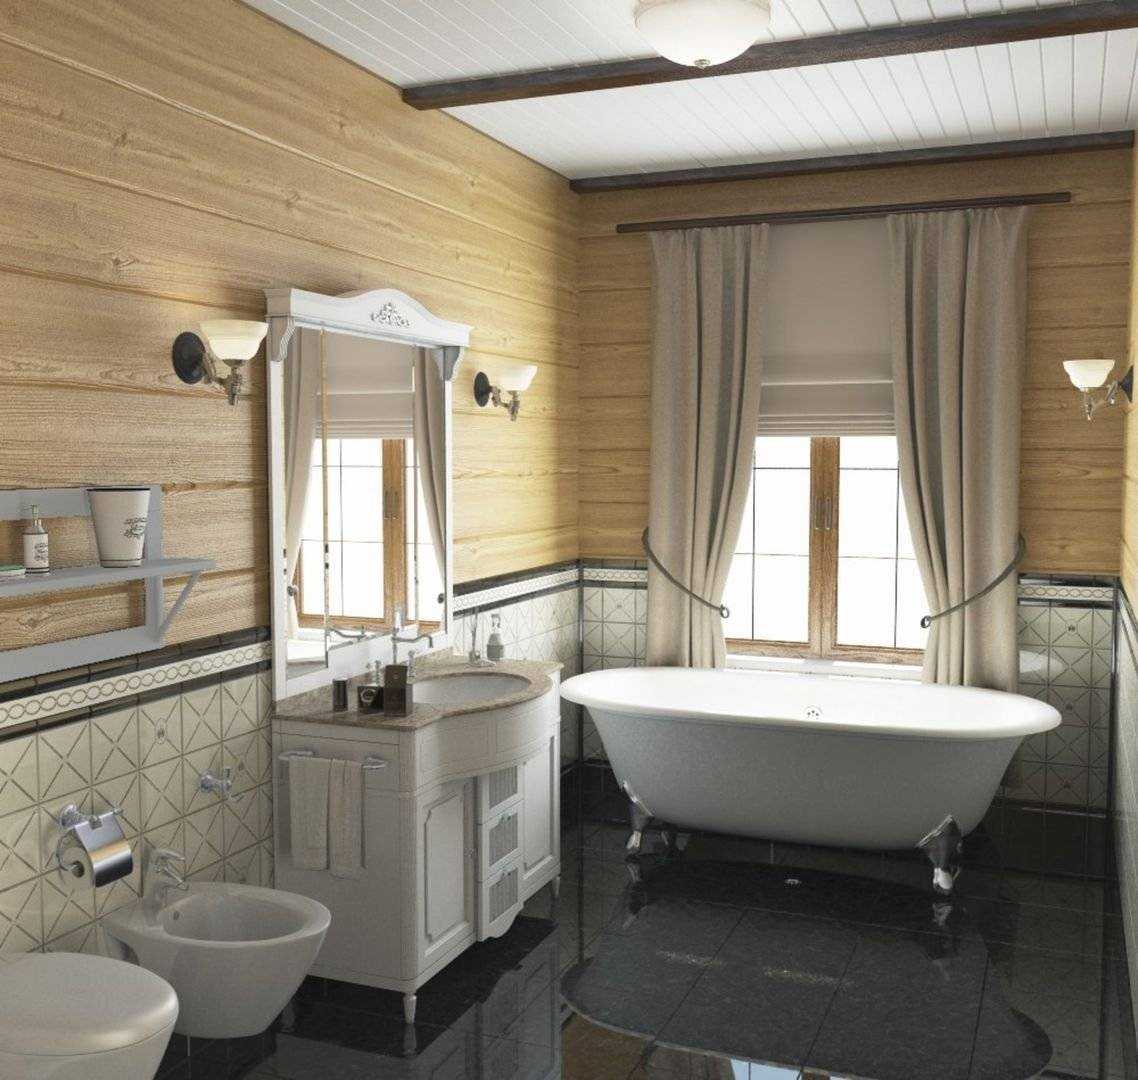 Ванная комната в деревянном доме: как сделать санузел, выгребную яму, канализацию, душевую кабину